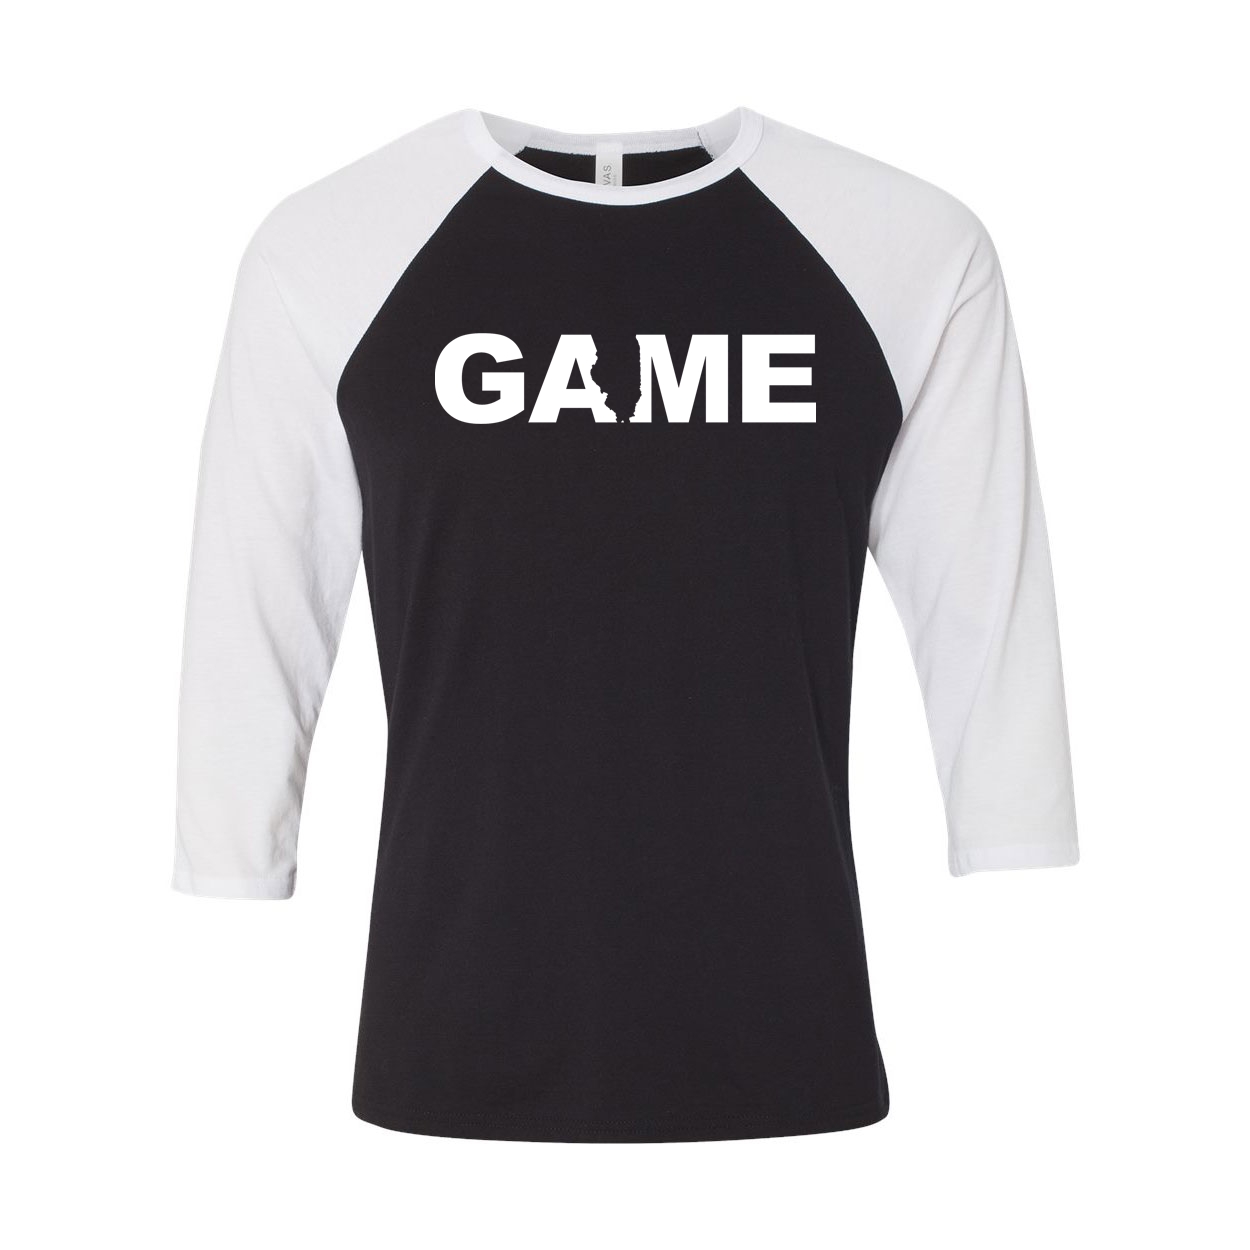 Game Illinois Classic Raglan Shirt Black/White (White Logo)